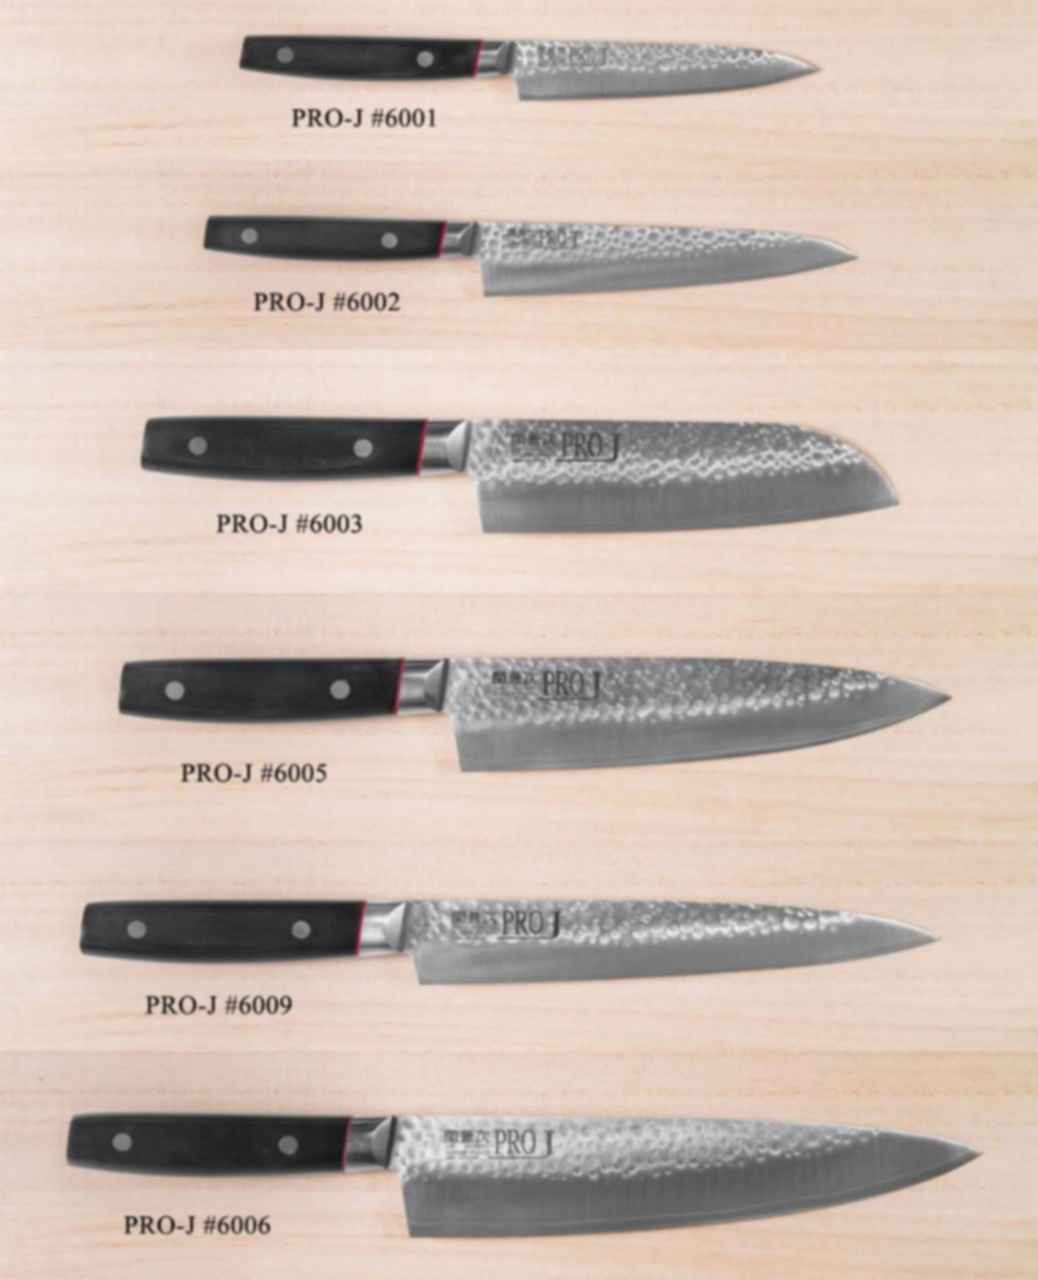 фото японских кухонных ножей